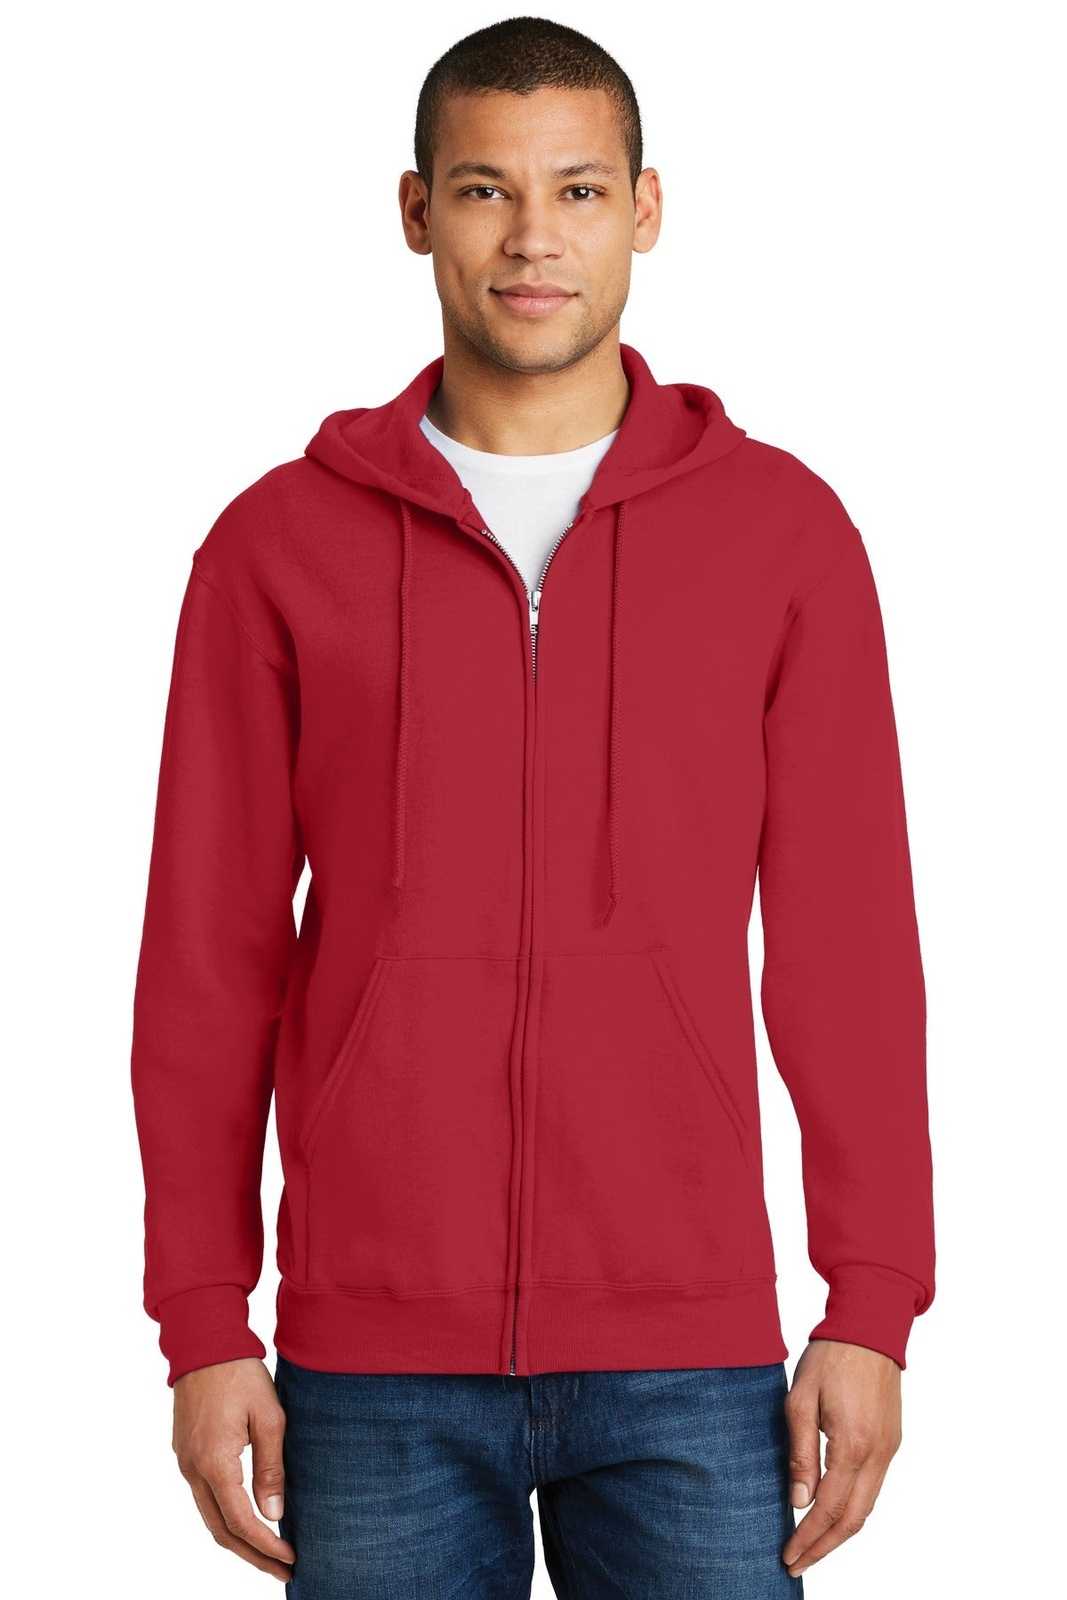 Jerzees 993M Nublend Full-Zip Hooded Sweatshirt - True Red - HIT a Double